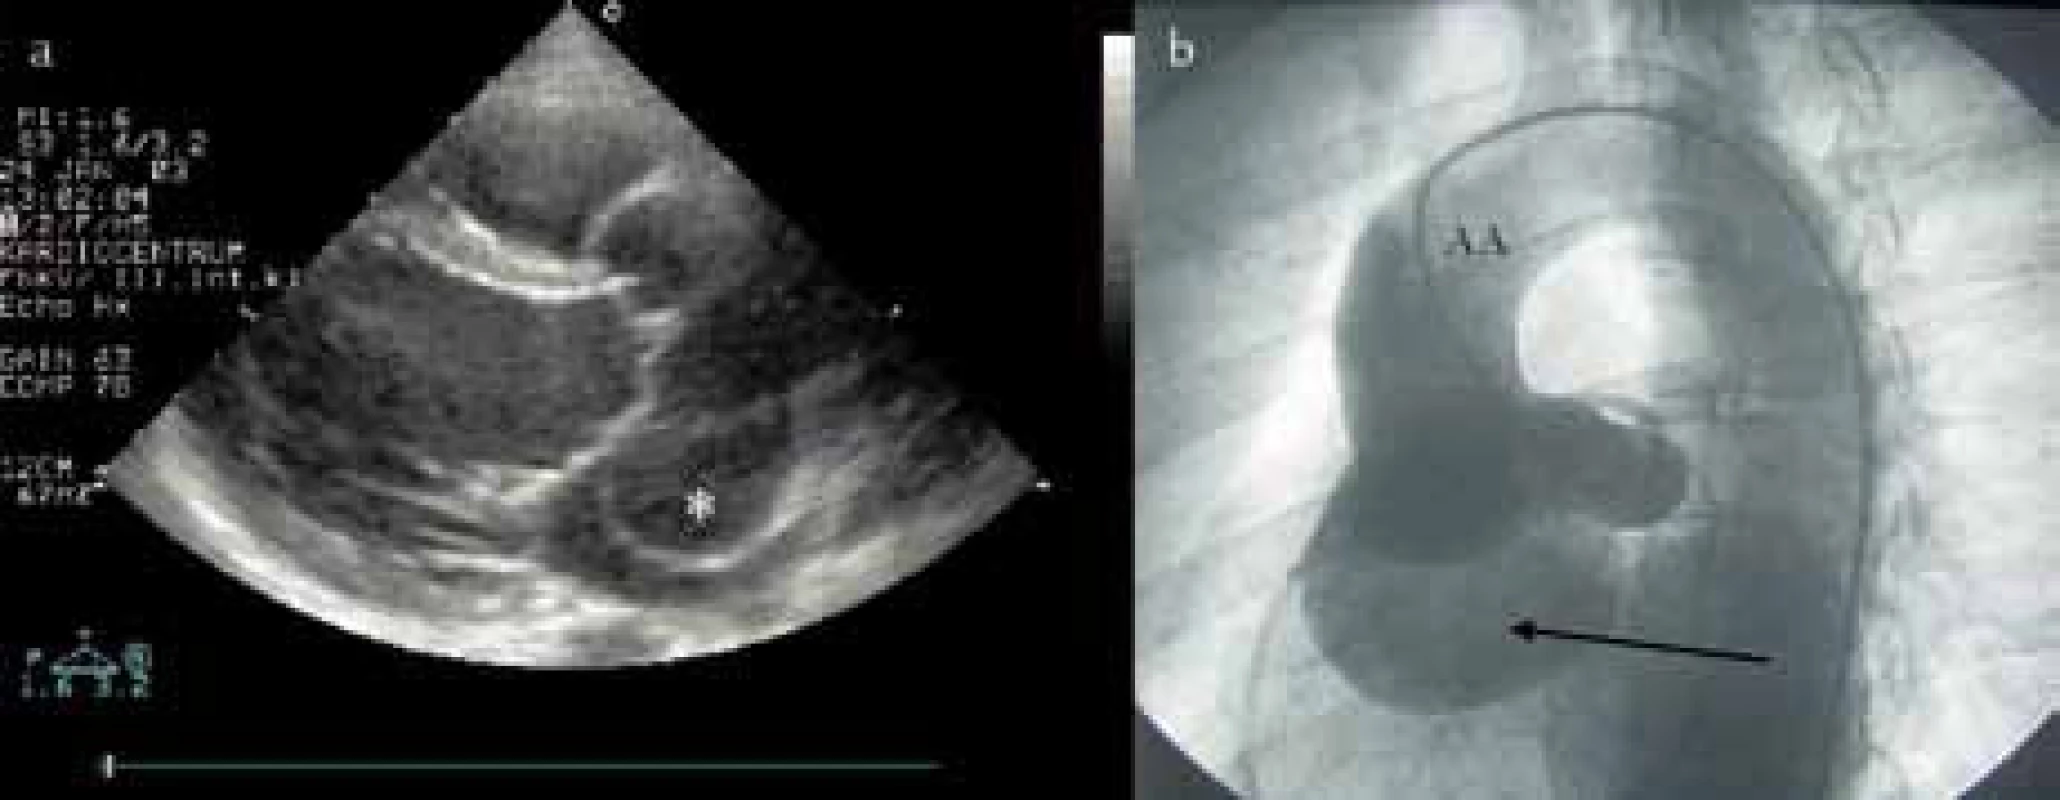 a) Echokardiografické vyšetření u obrovského aneuryzmatu Valsalvova sinu vedoucí k poruše koaptace aortálních cípů. b) Aortografie obrovského aneuryzmatu Valsalvova sinu.